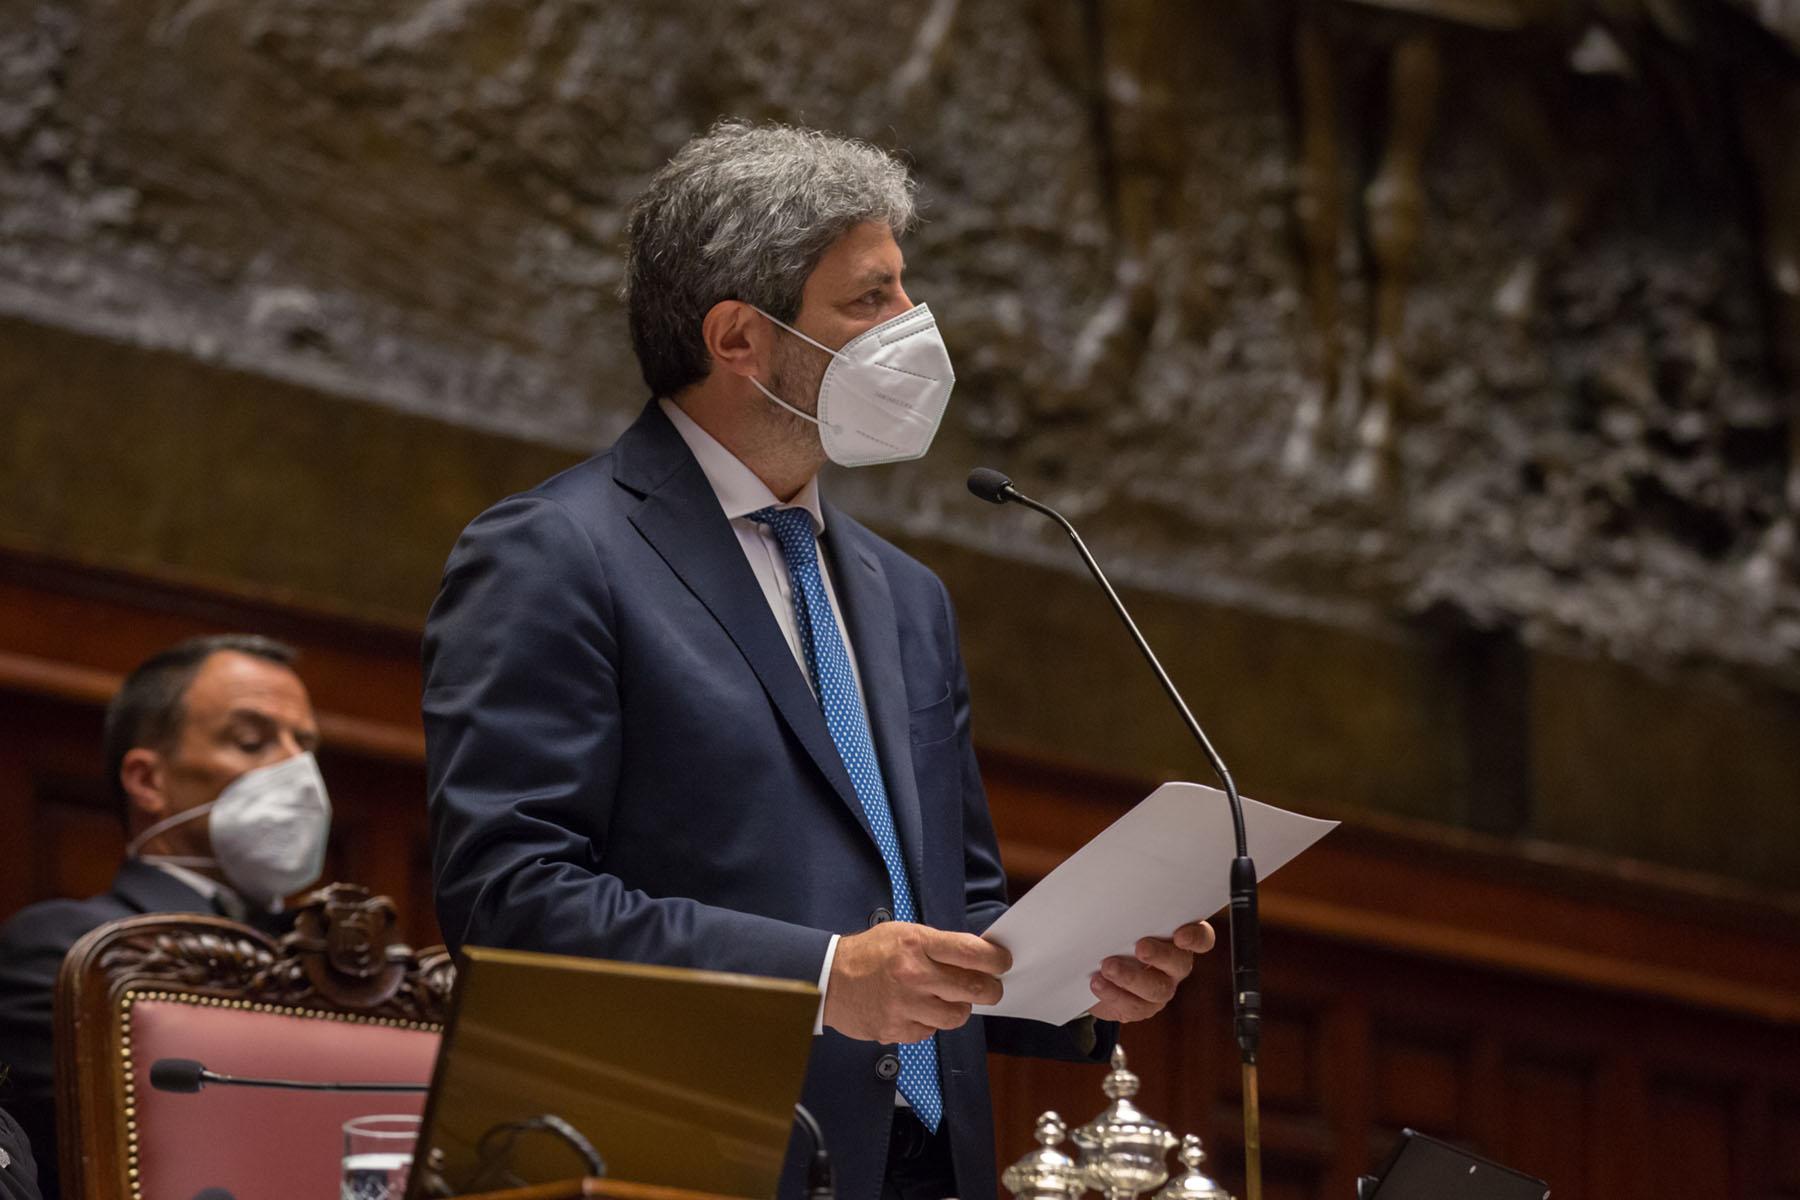 Intervento del Presidente della Camera dei deputati, Roberto Fico